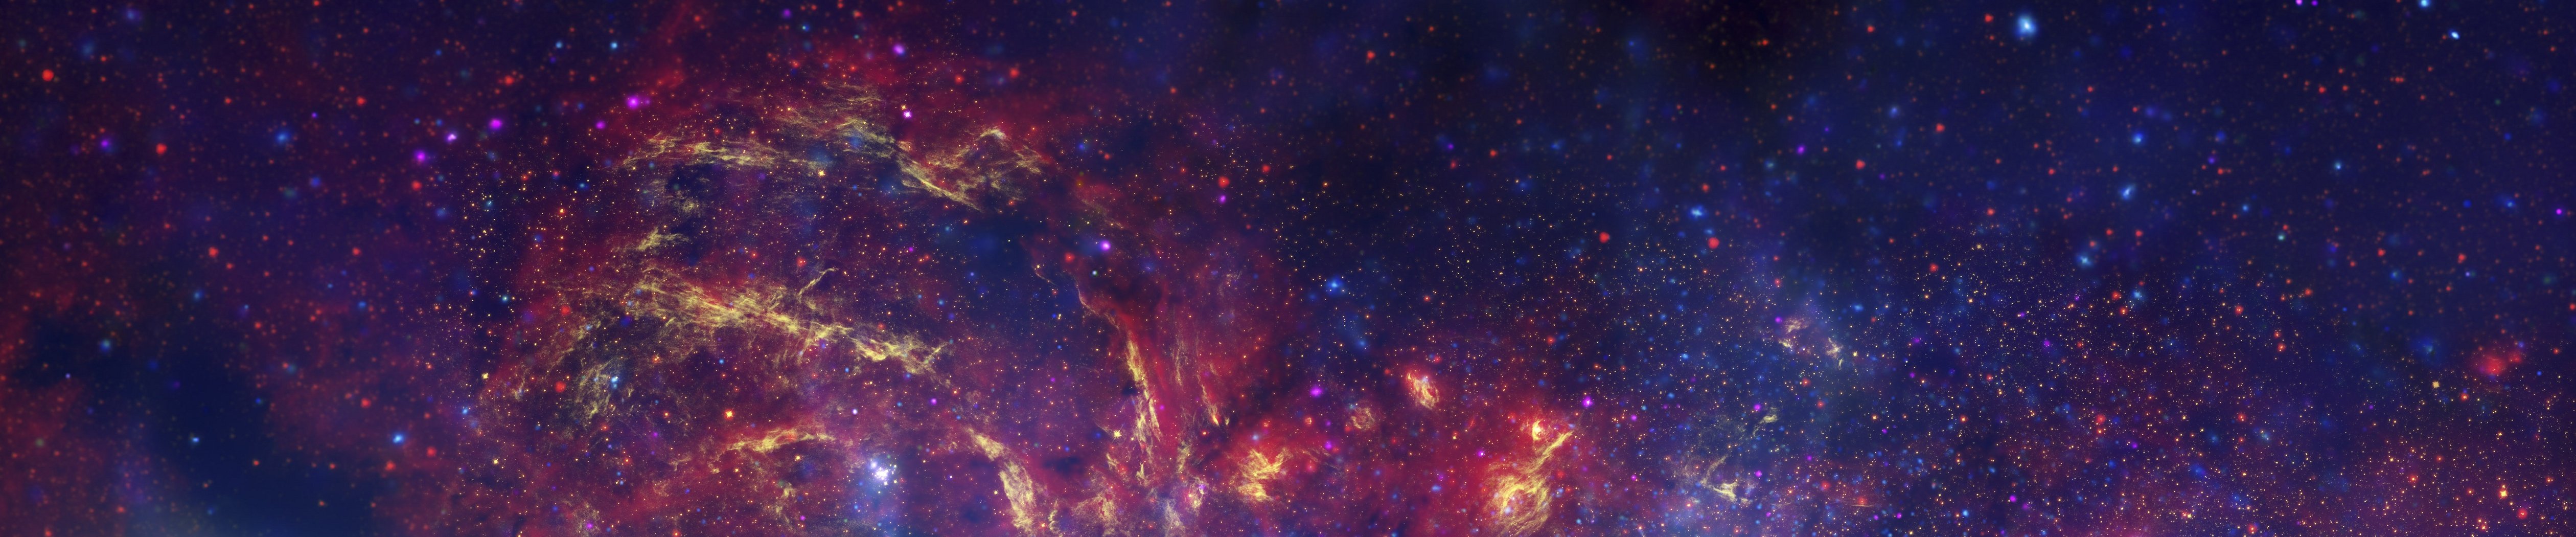 Space Panoramic Wallpaper - WallpaperSafari